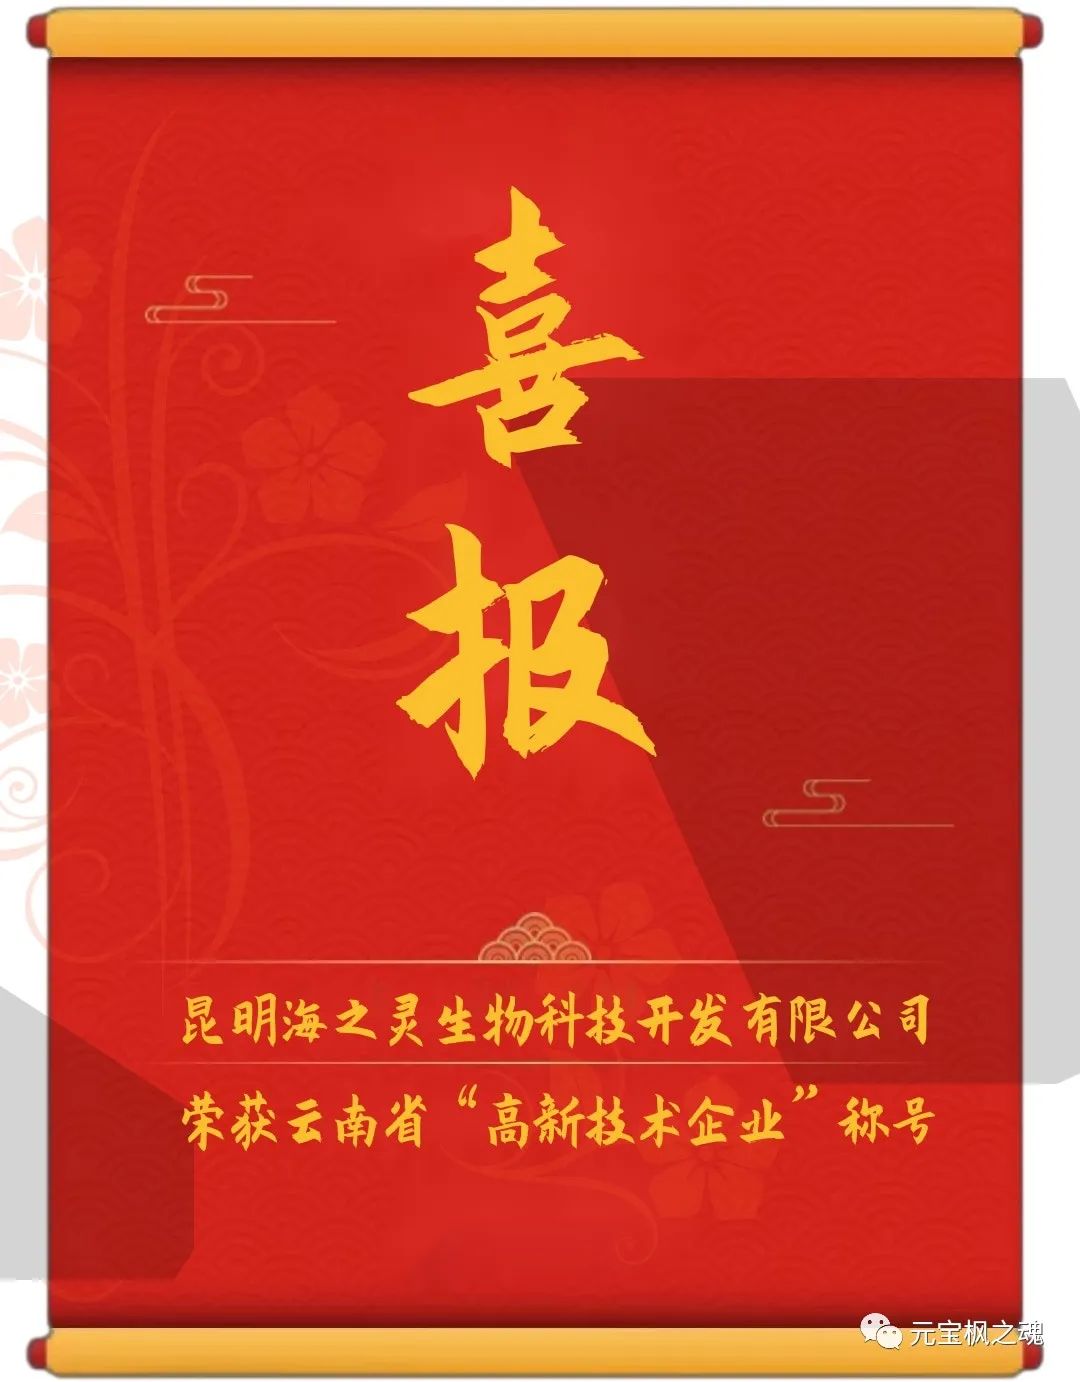 熱烈祝賀公司榮獲云南省“高新技術企業”稱號